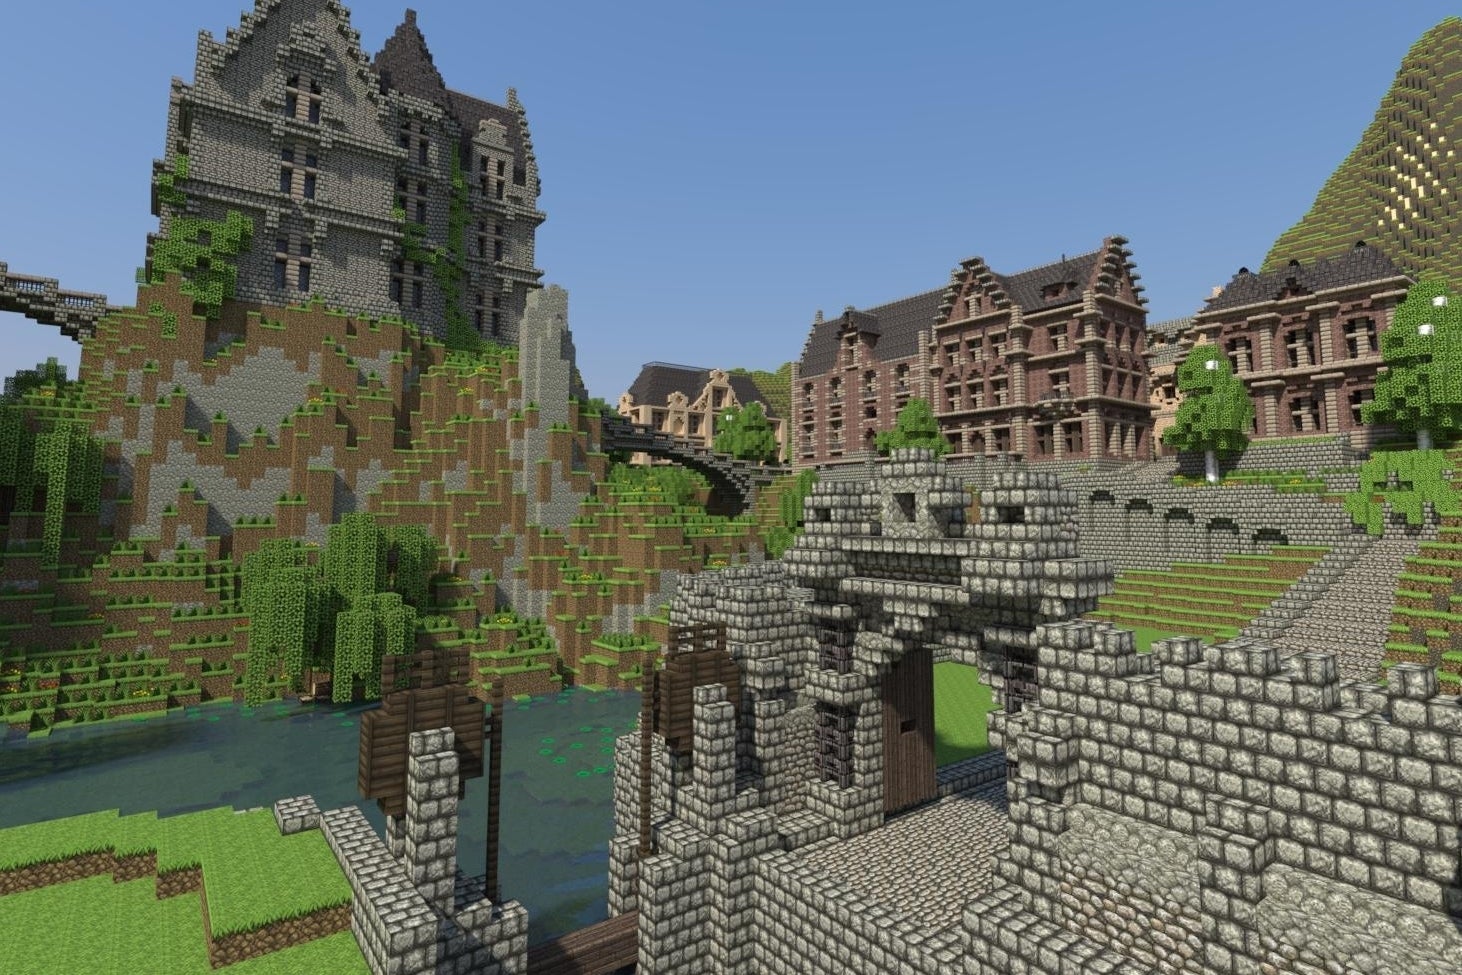 Bilder zu Minecraft: Veränderungen am World Generator